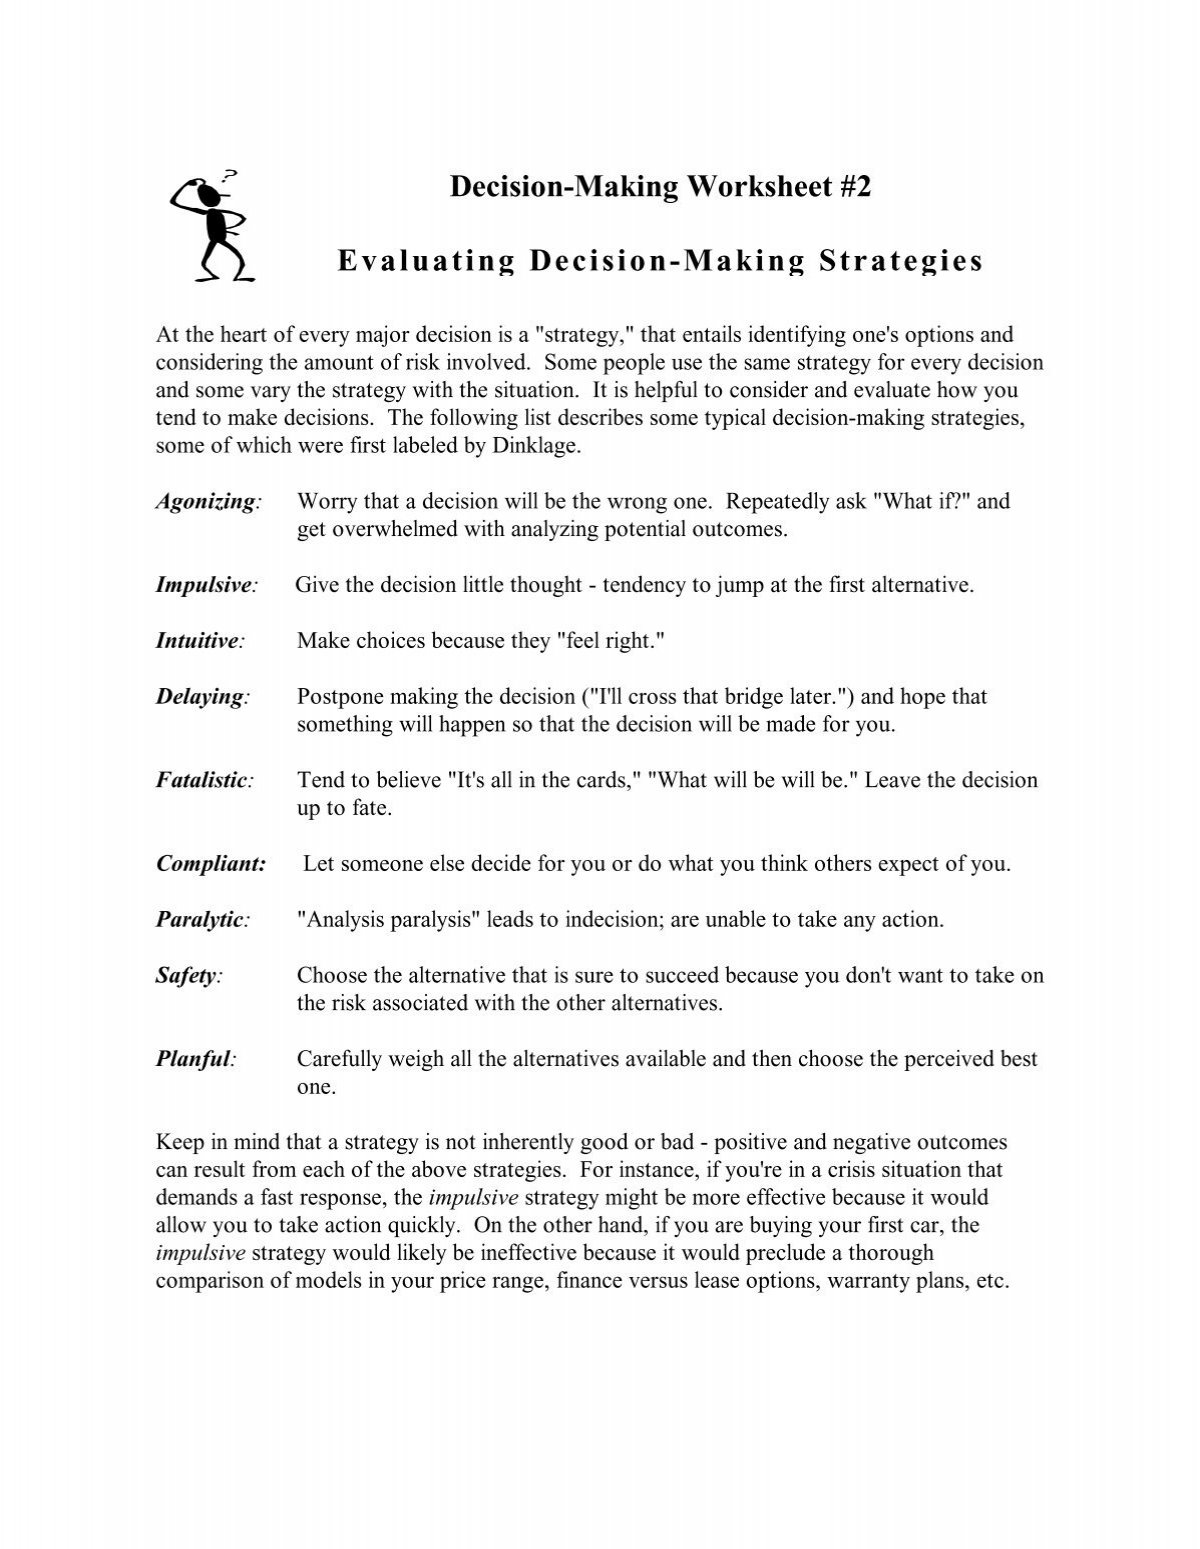 decision-making-worksheet-2-evaluating-decision-making